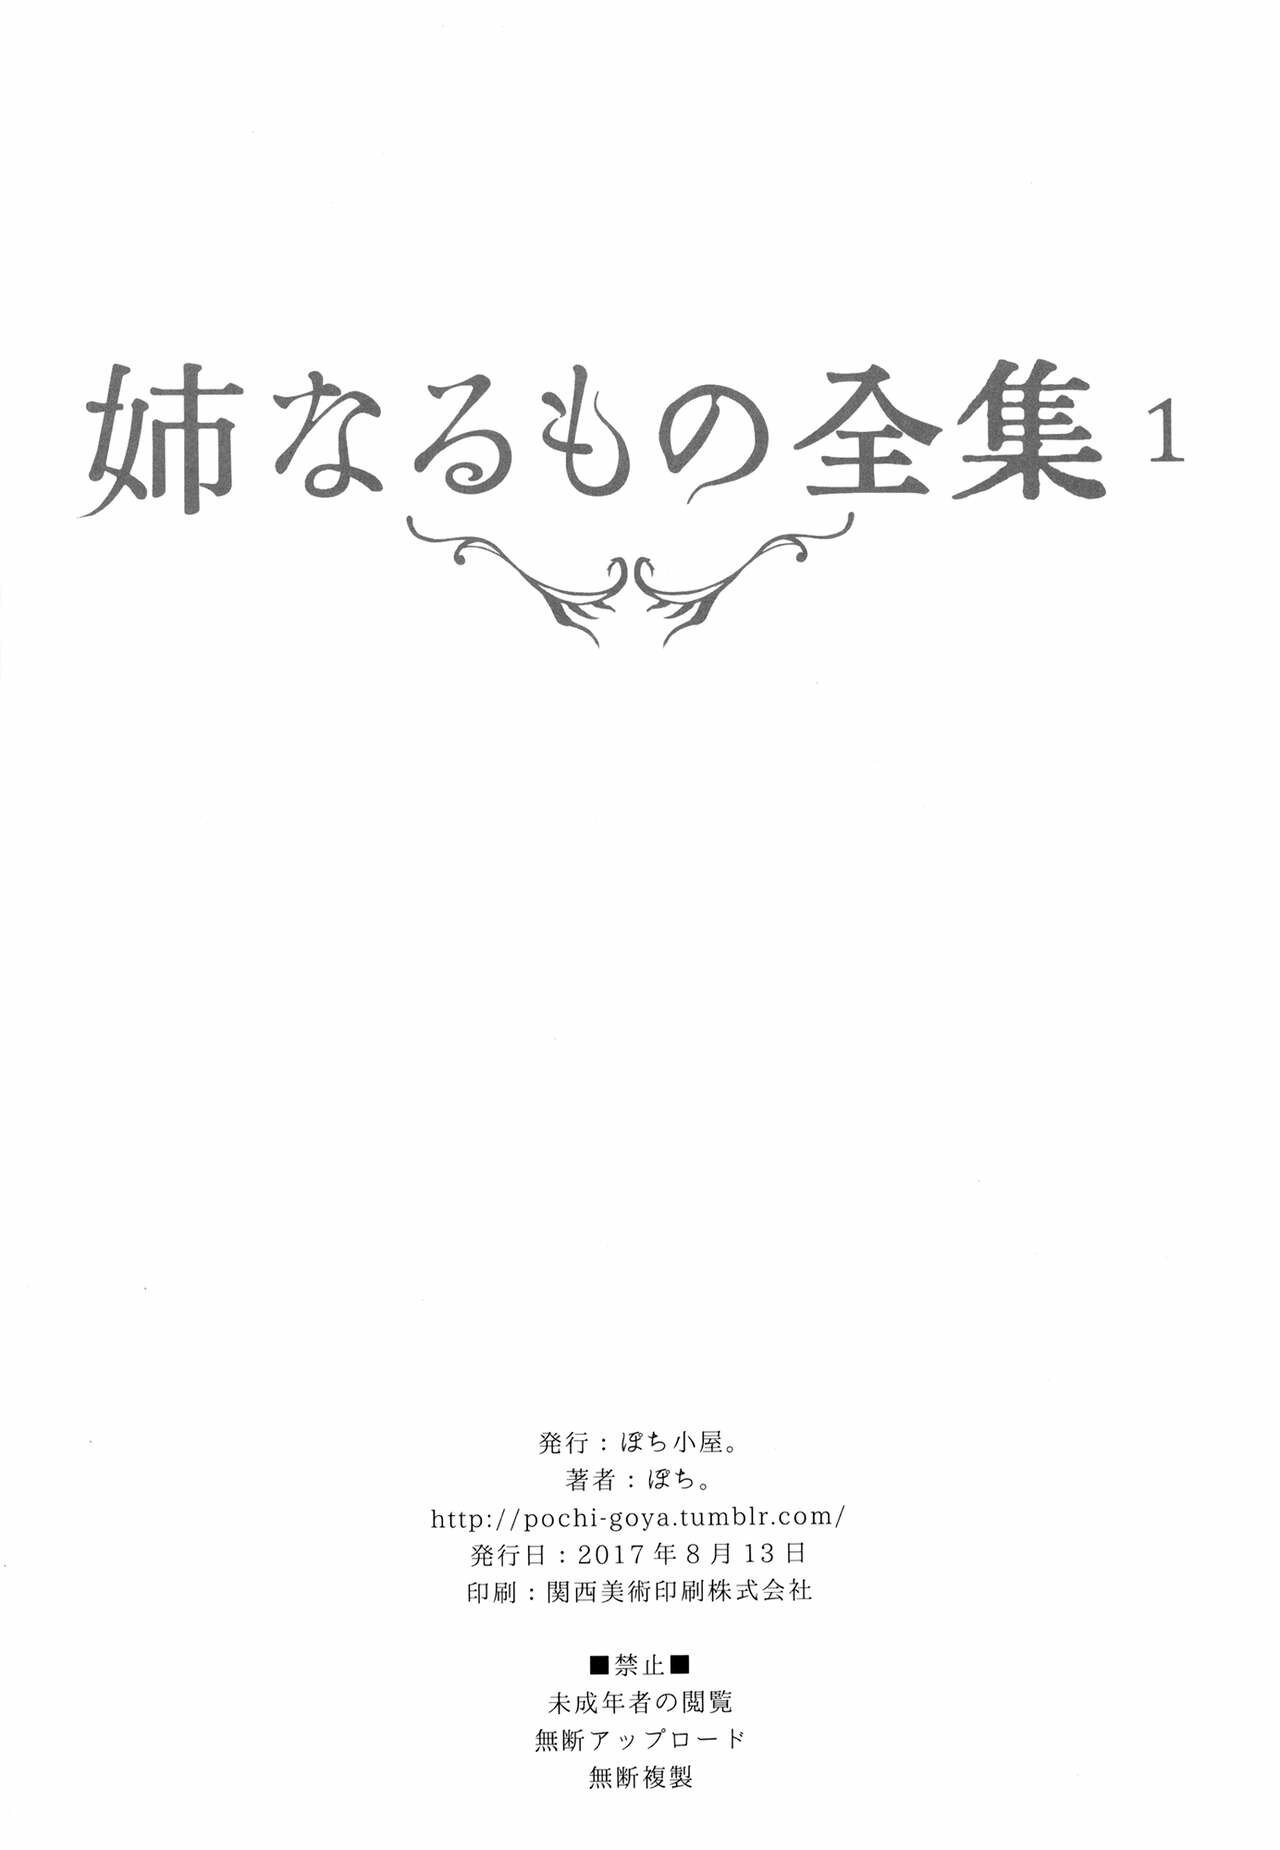 Ane Naru Mono Zenshuu 1 4-5 Ane Naru Mono Complete Works 1 4-5 - 138